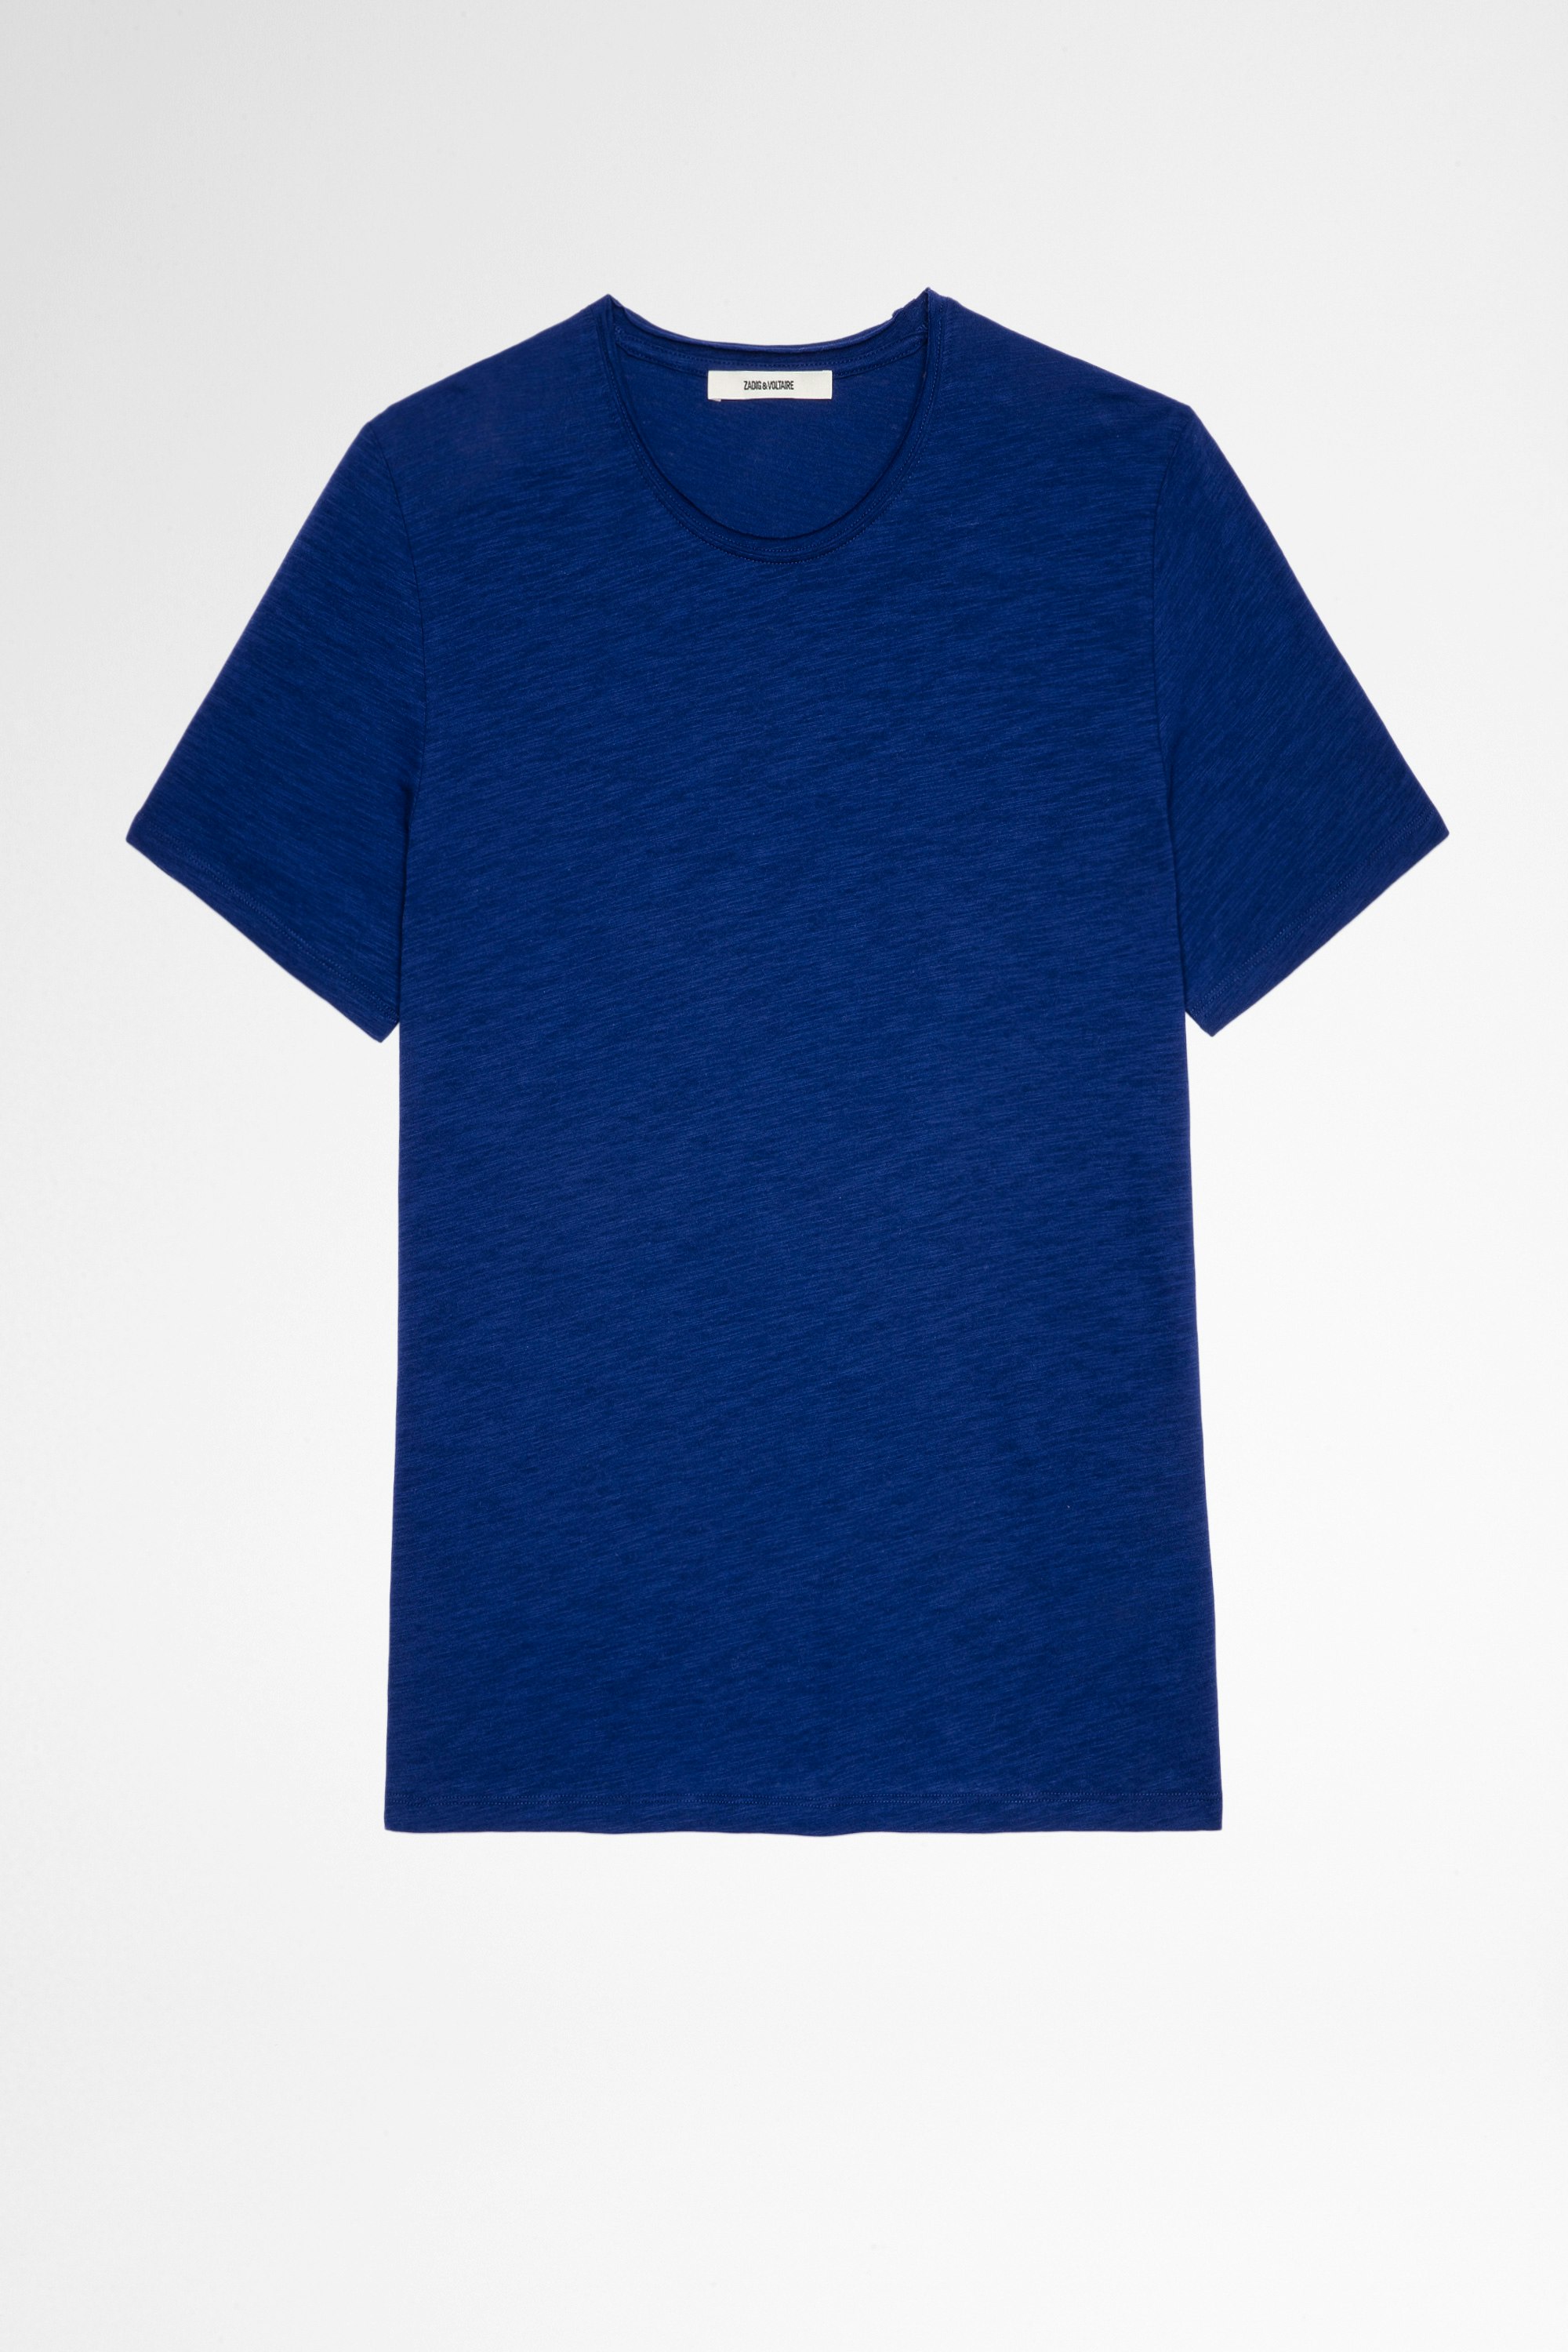 Camiseta Toby Flamme Camiseta azul real de algodón de manga corta para hombre